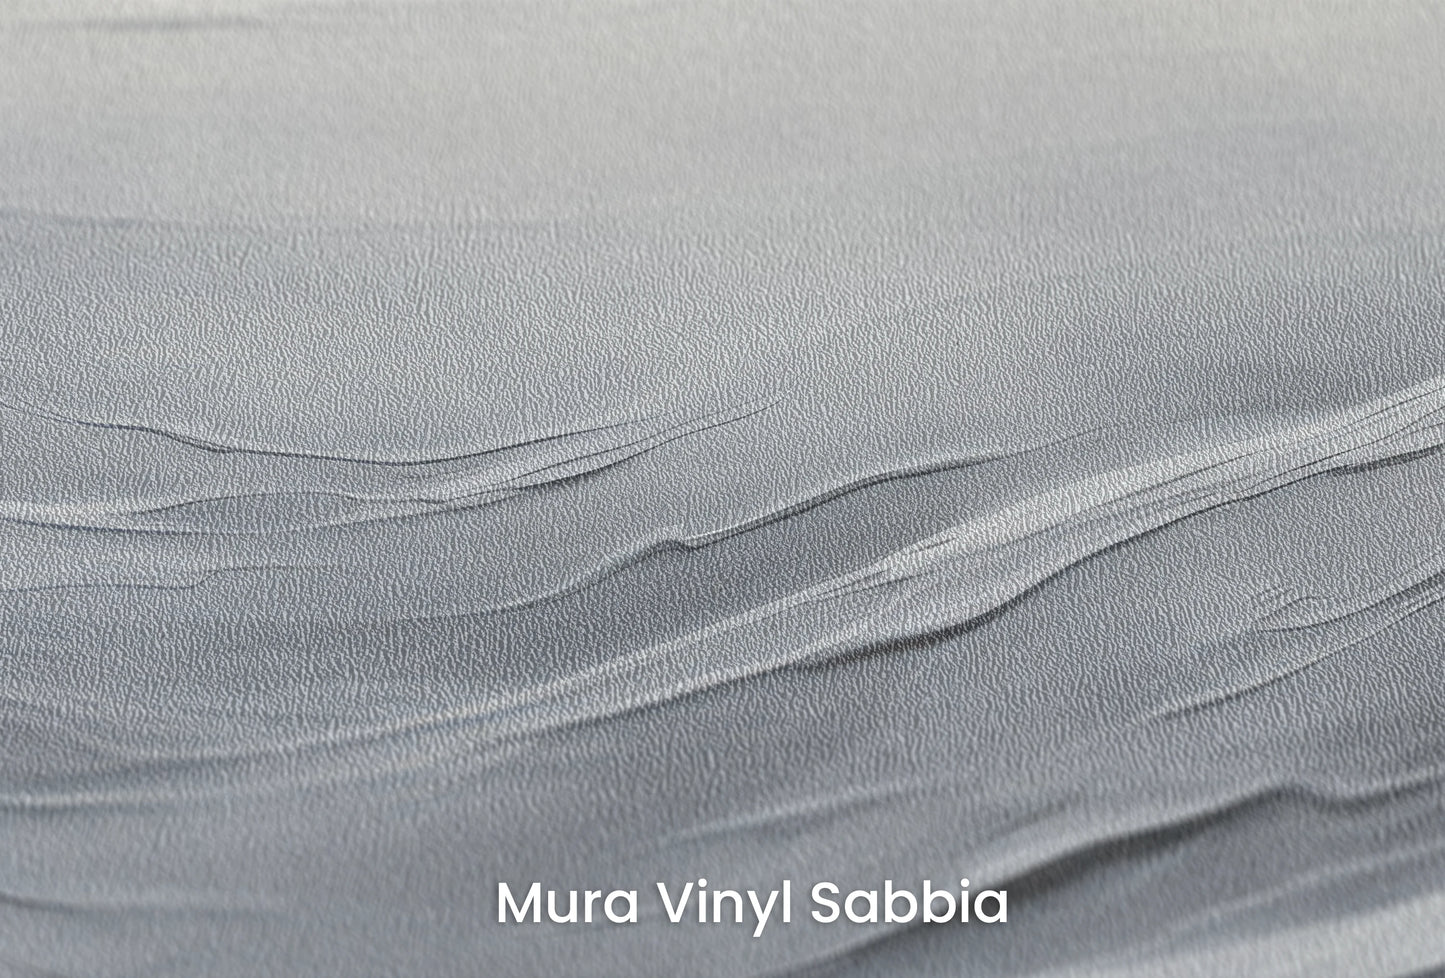 Zbliżenie na artystyczną fototapetę o nazwie Serenity Waves na podłożu Mura Vinyl Sabbia struktura grubego ziarna piasku.